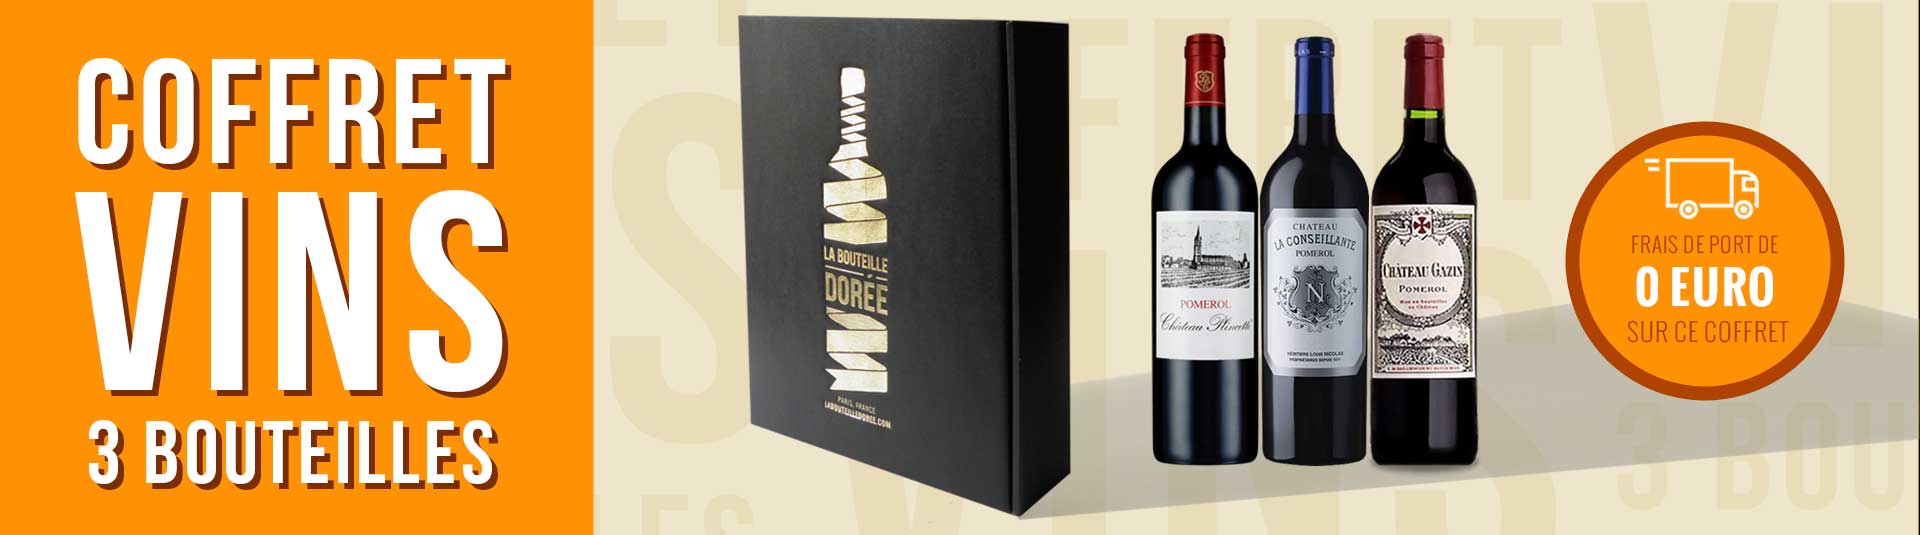 Coffret vin rouge Bordeaux Pomerol 3 bouteilles